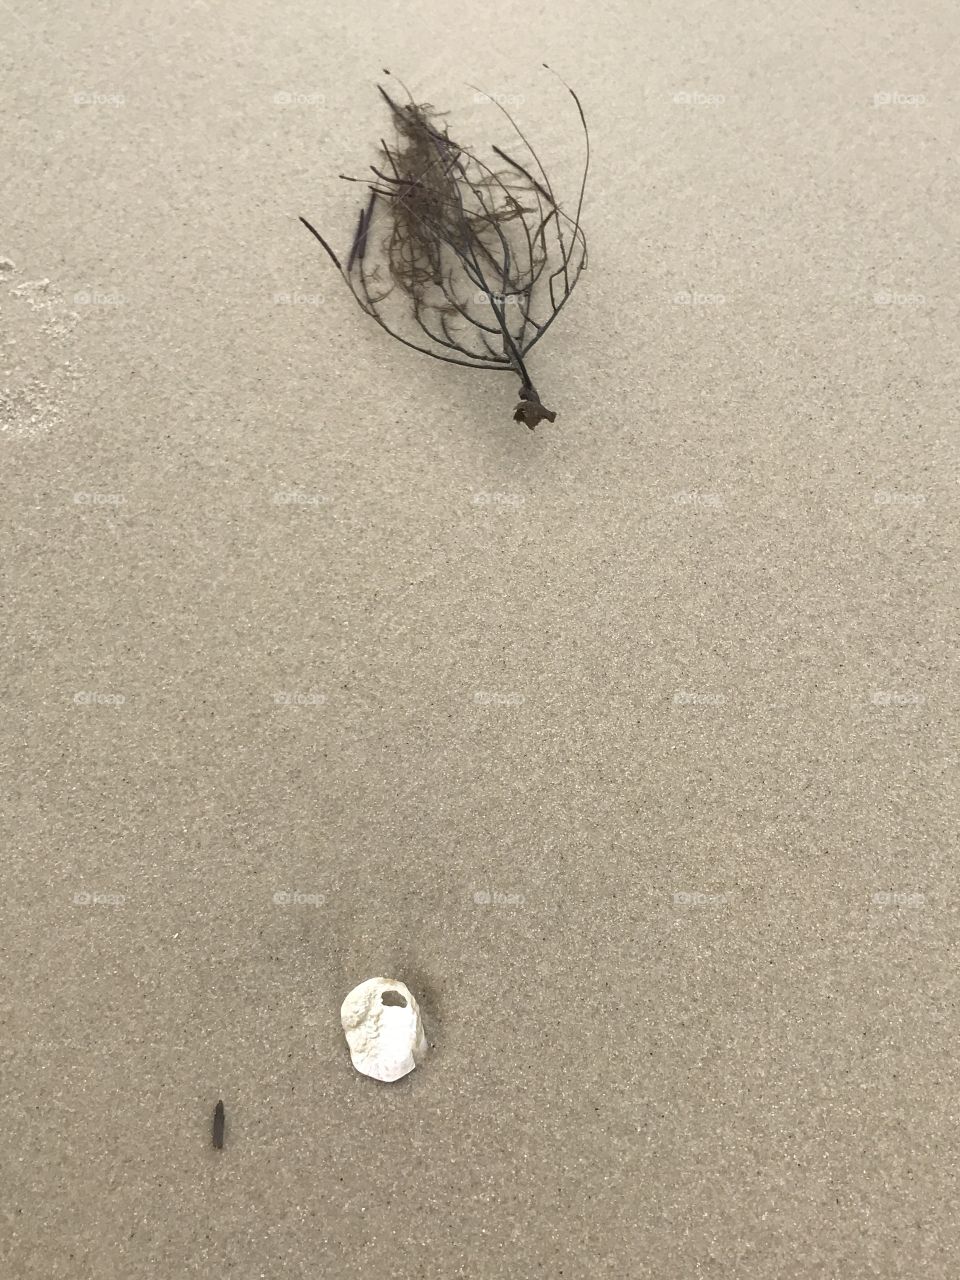 Seashell and sea debris on sand.